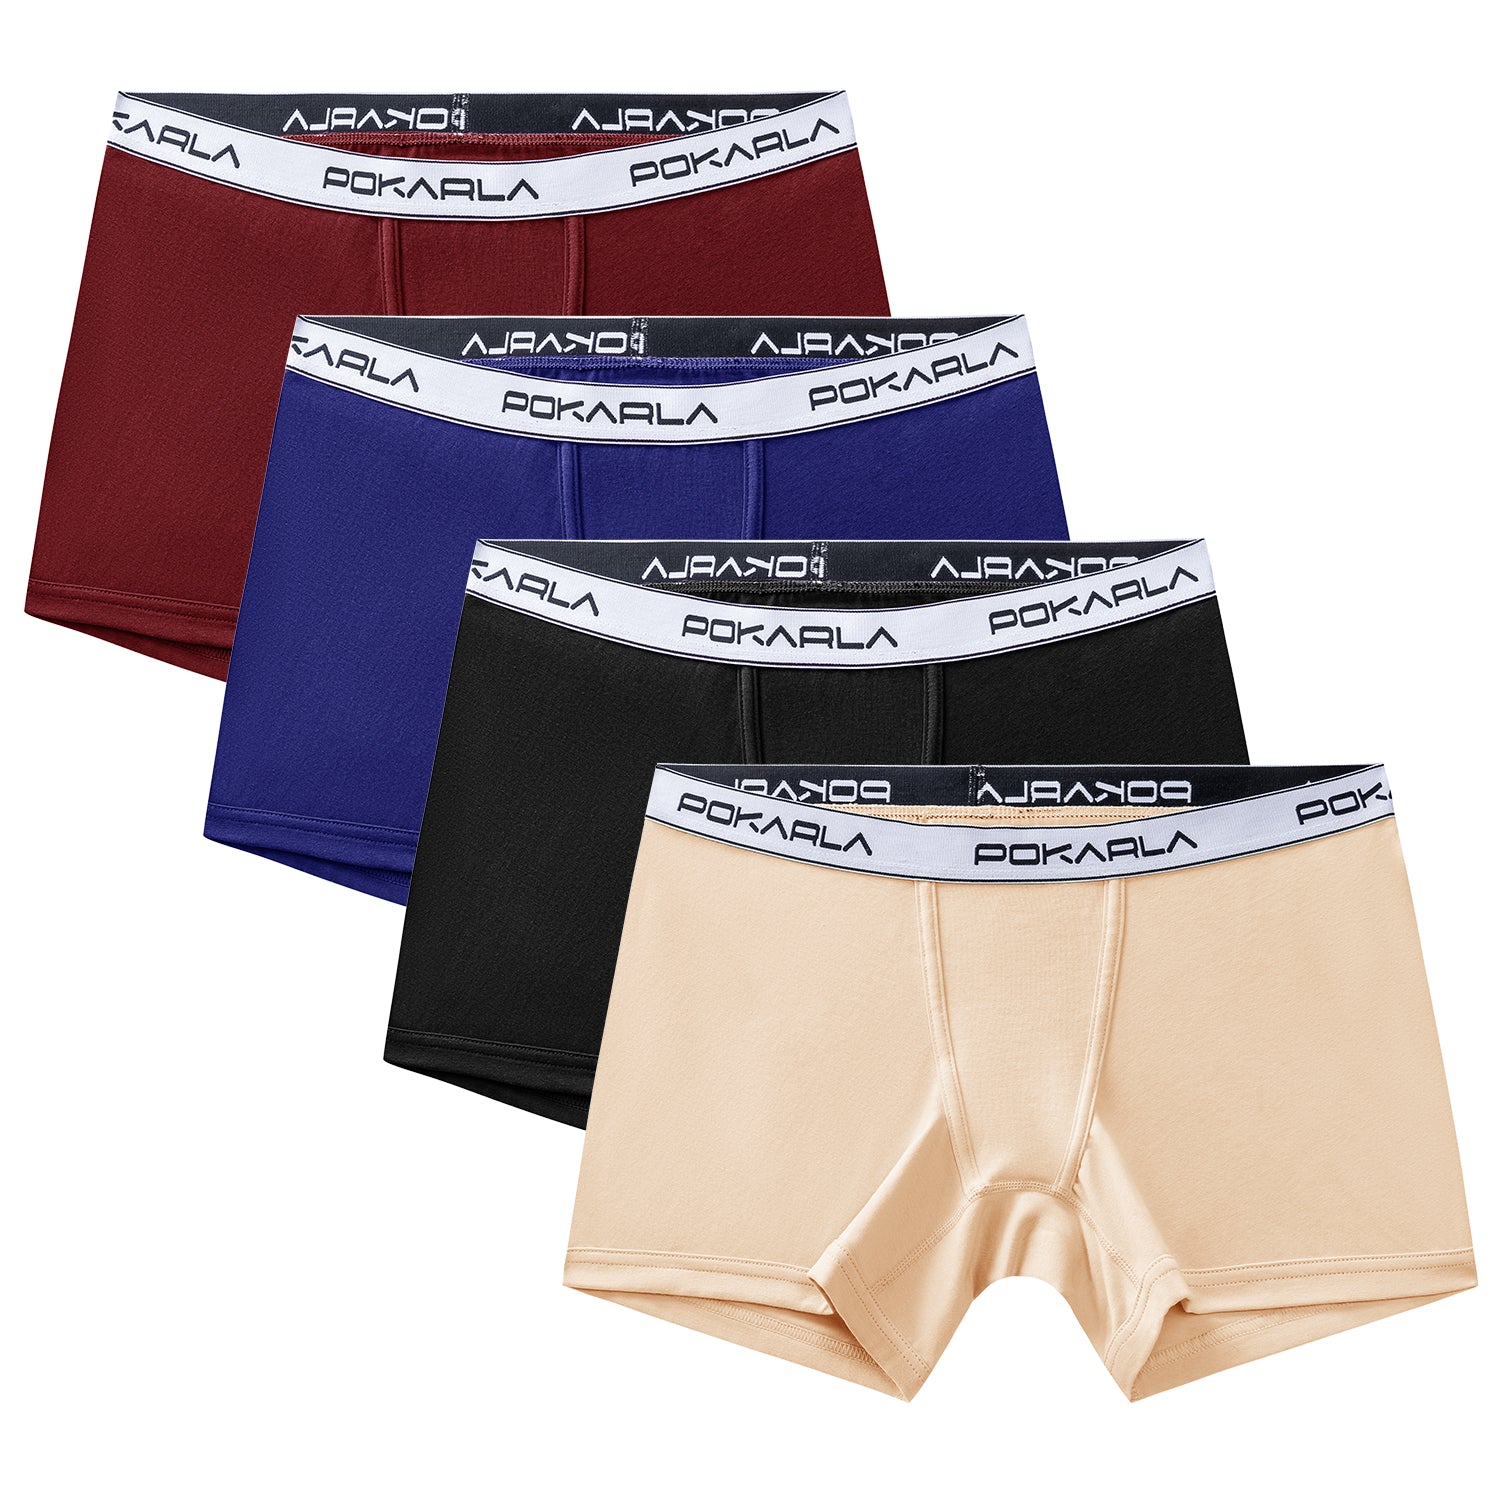 POKARLA 4.5 Inseam Womens Cotton Boxer Briefs Underwear Boy Shorts Pa